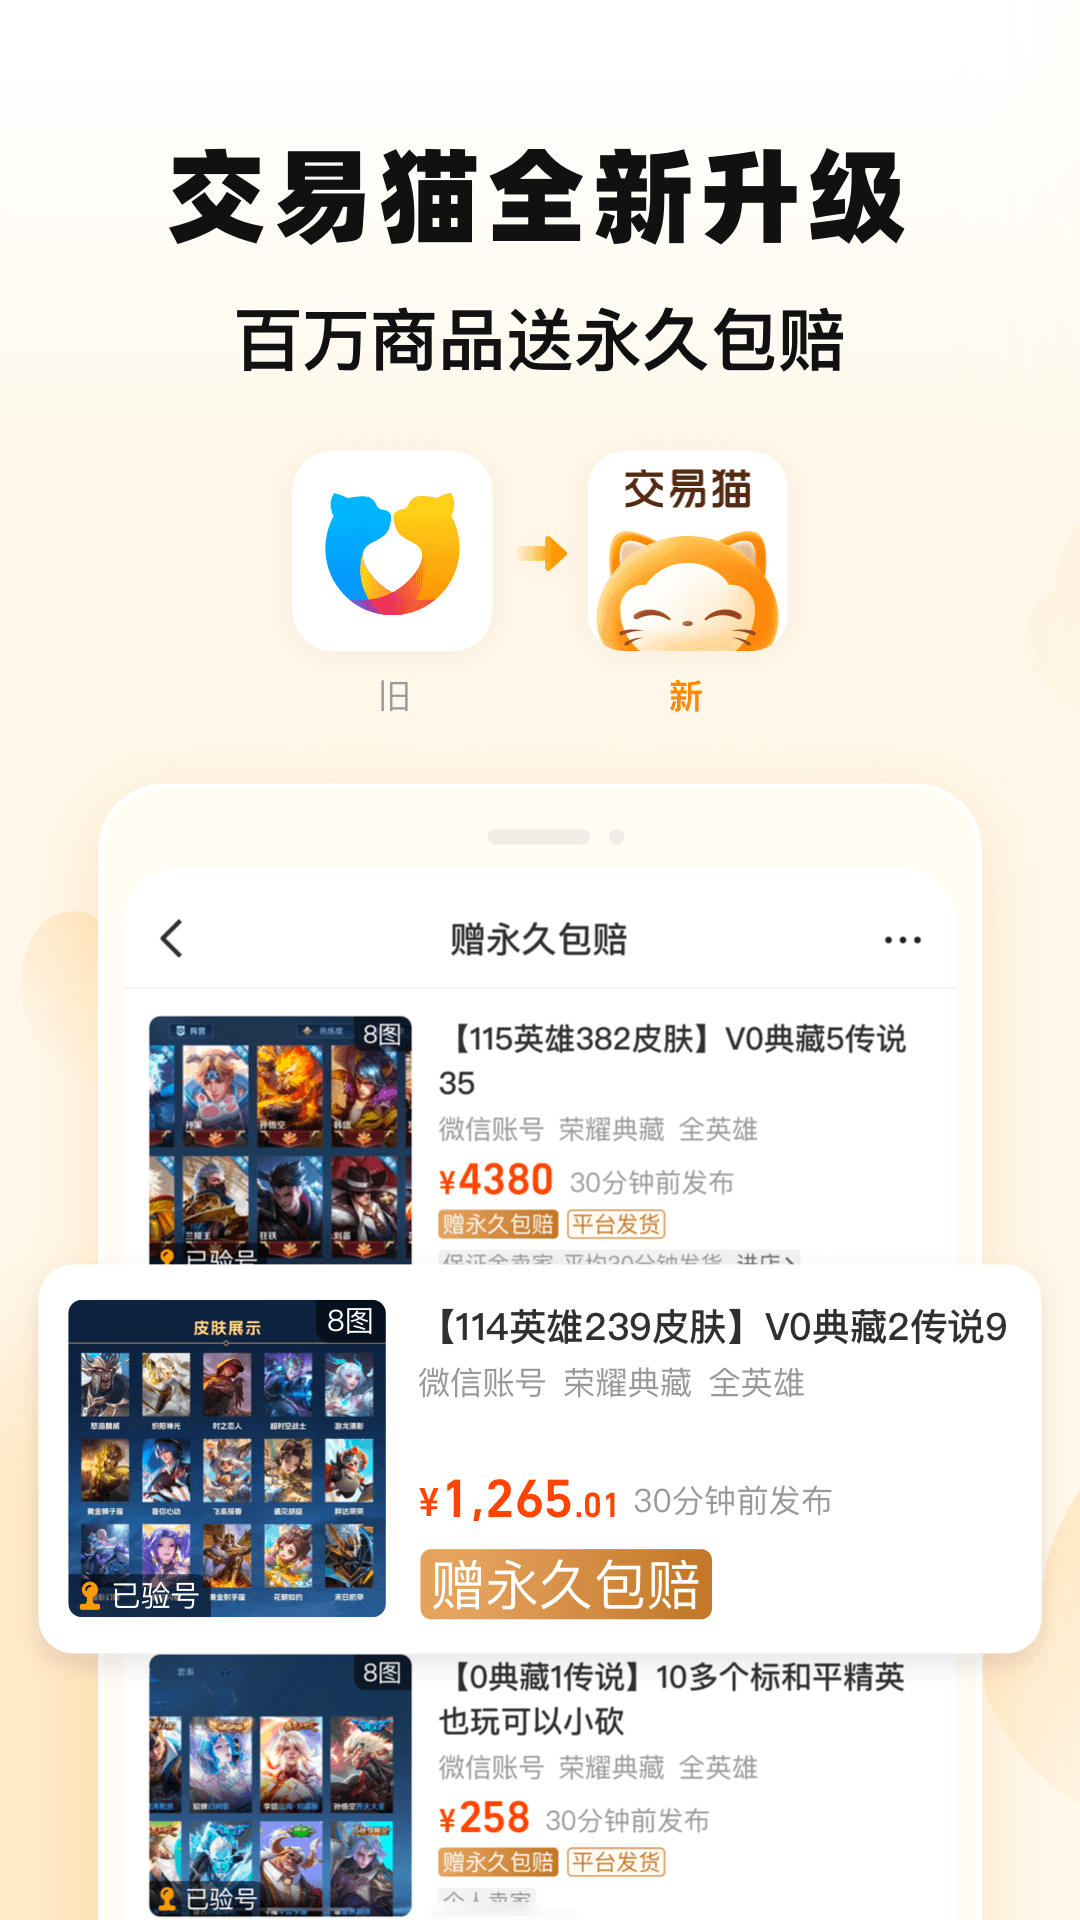 交易猫手游交易平台官方app下载图片1